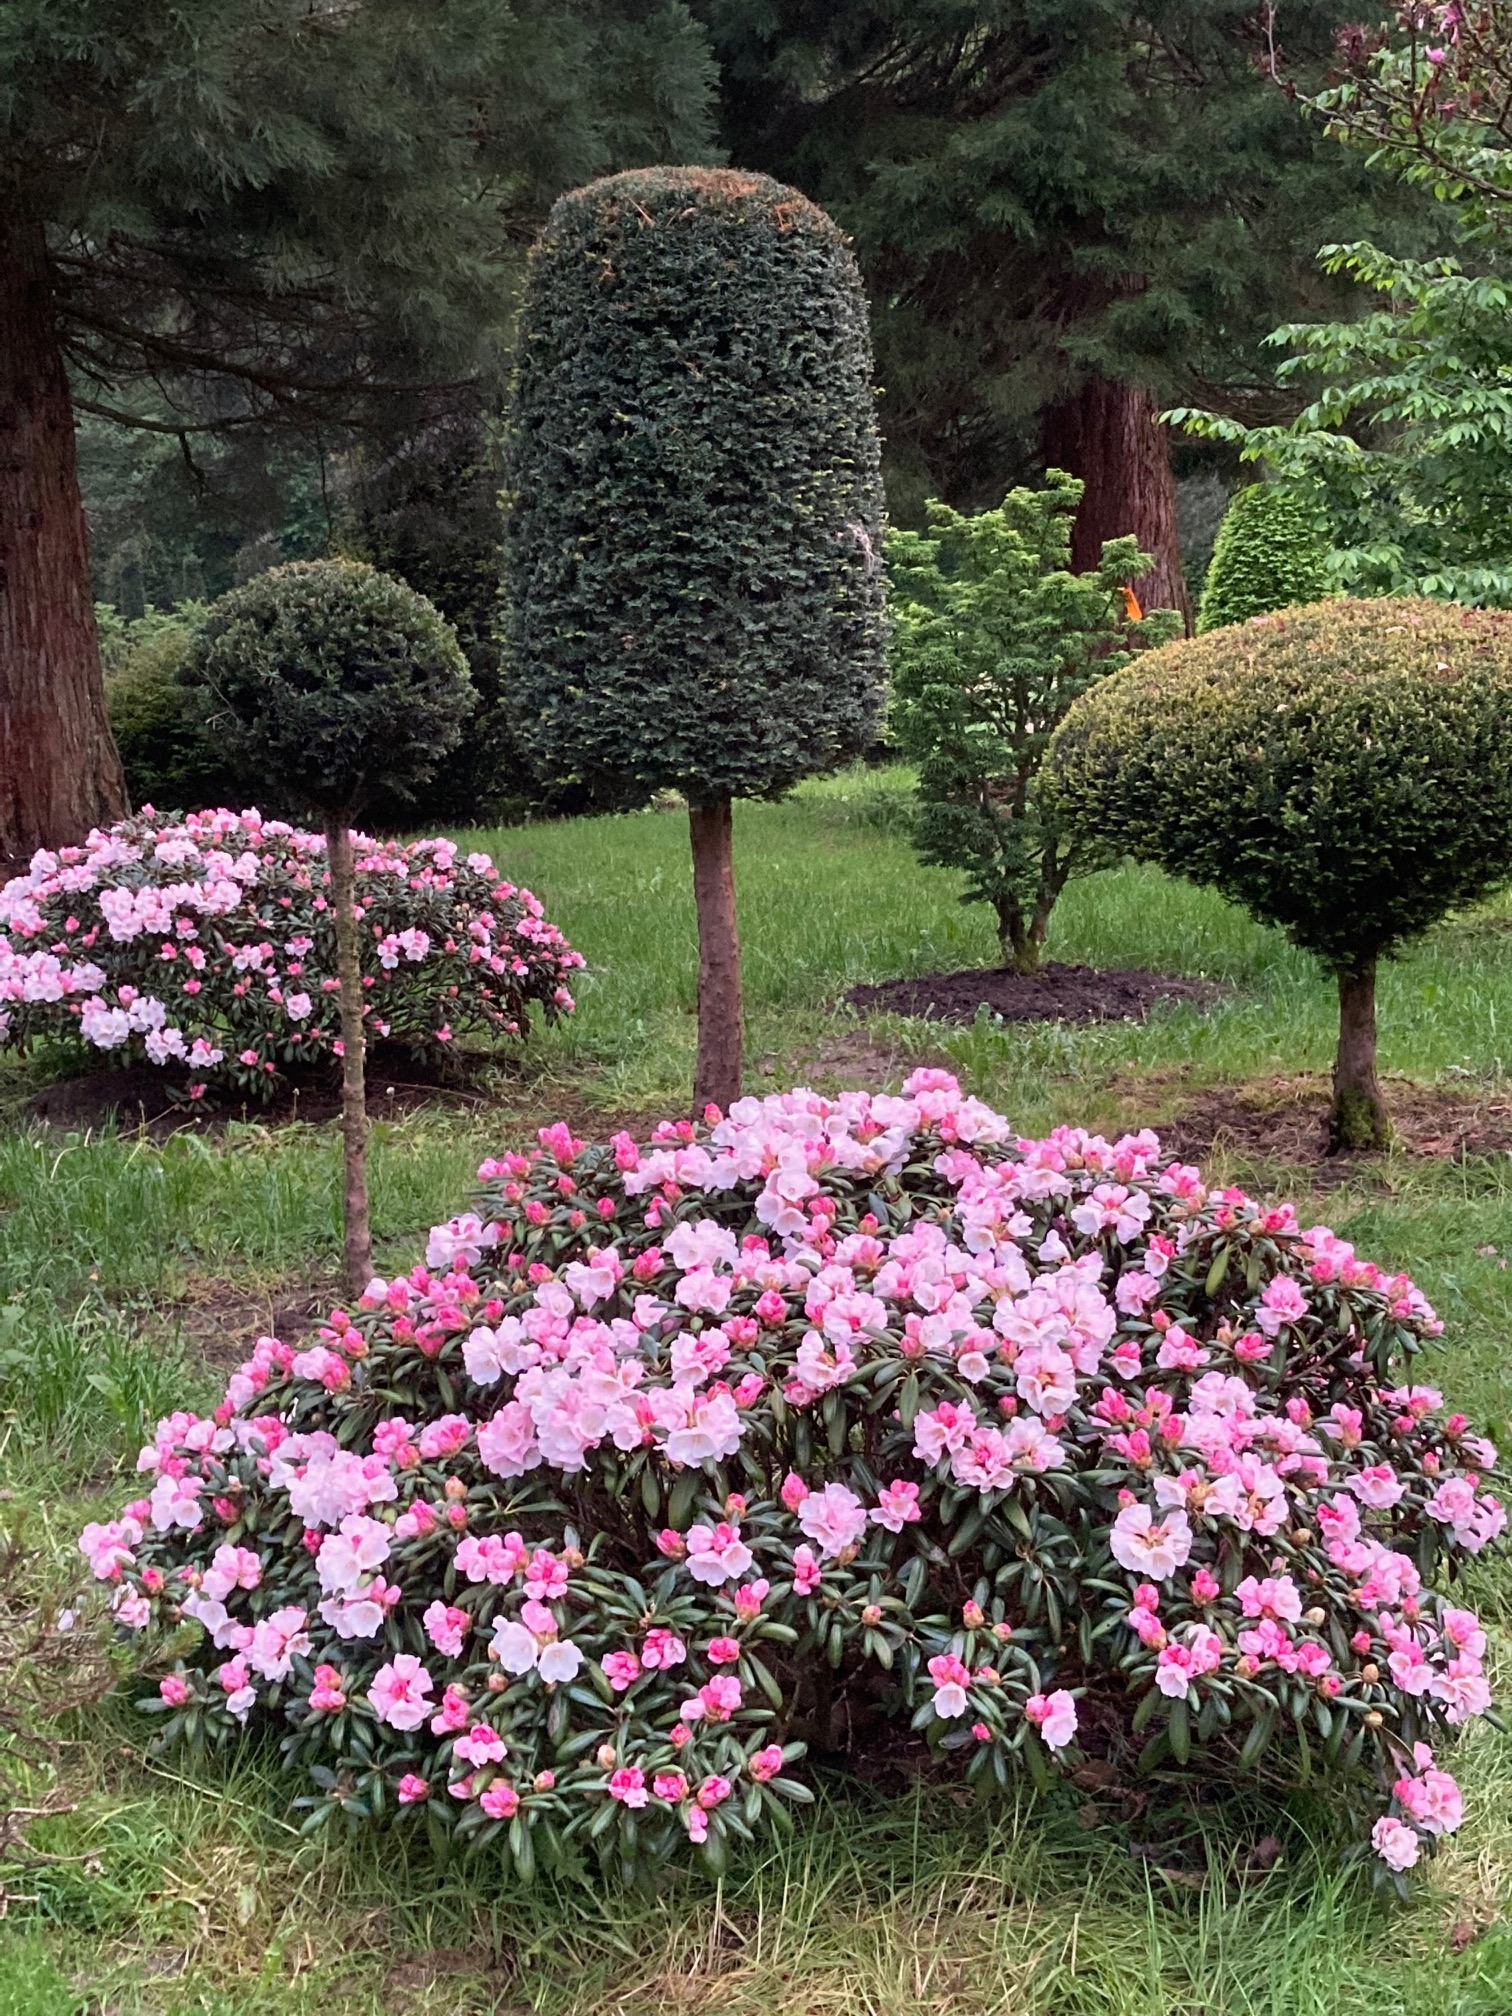 Traumhafte Rhododendron (Baumschule, Gummersbach, Werner, Bäume, Pflanzen, Garten) | Baumschule Werner — Gummersbach